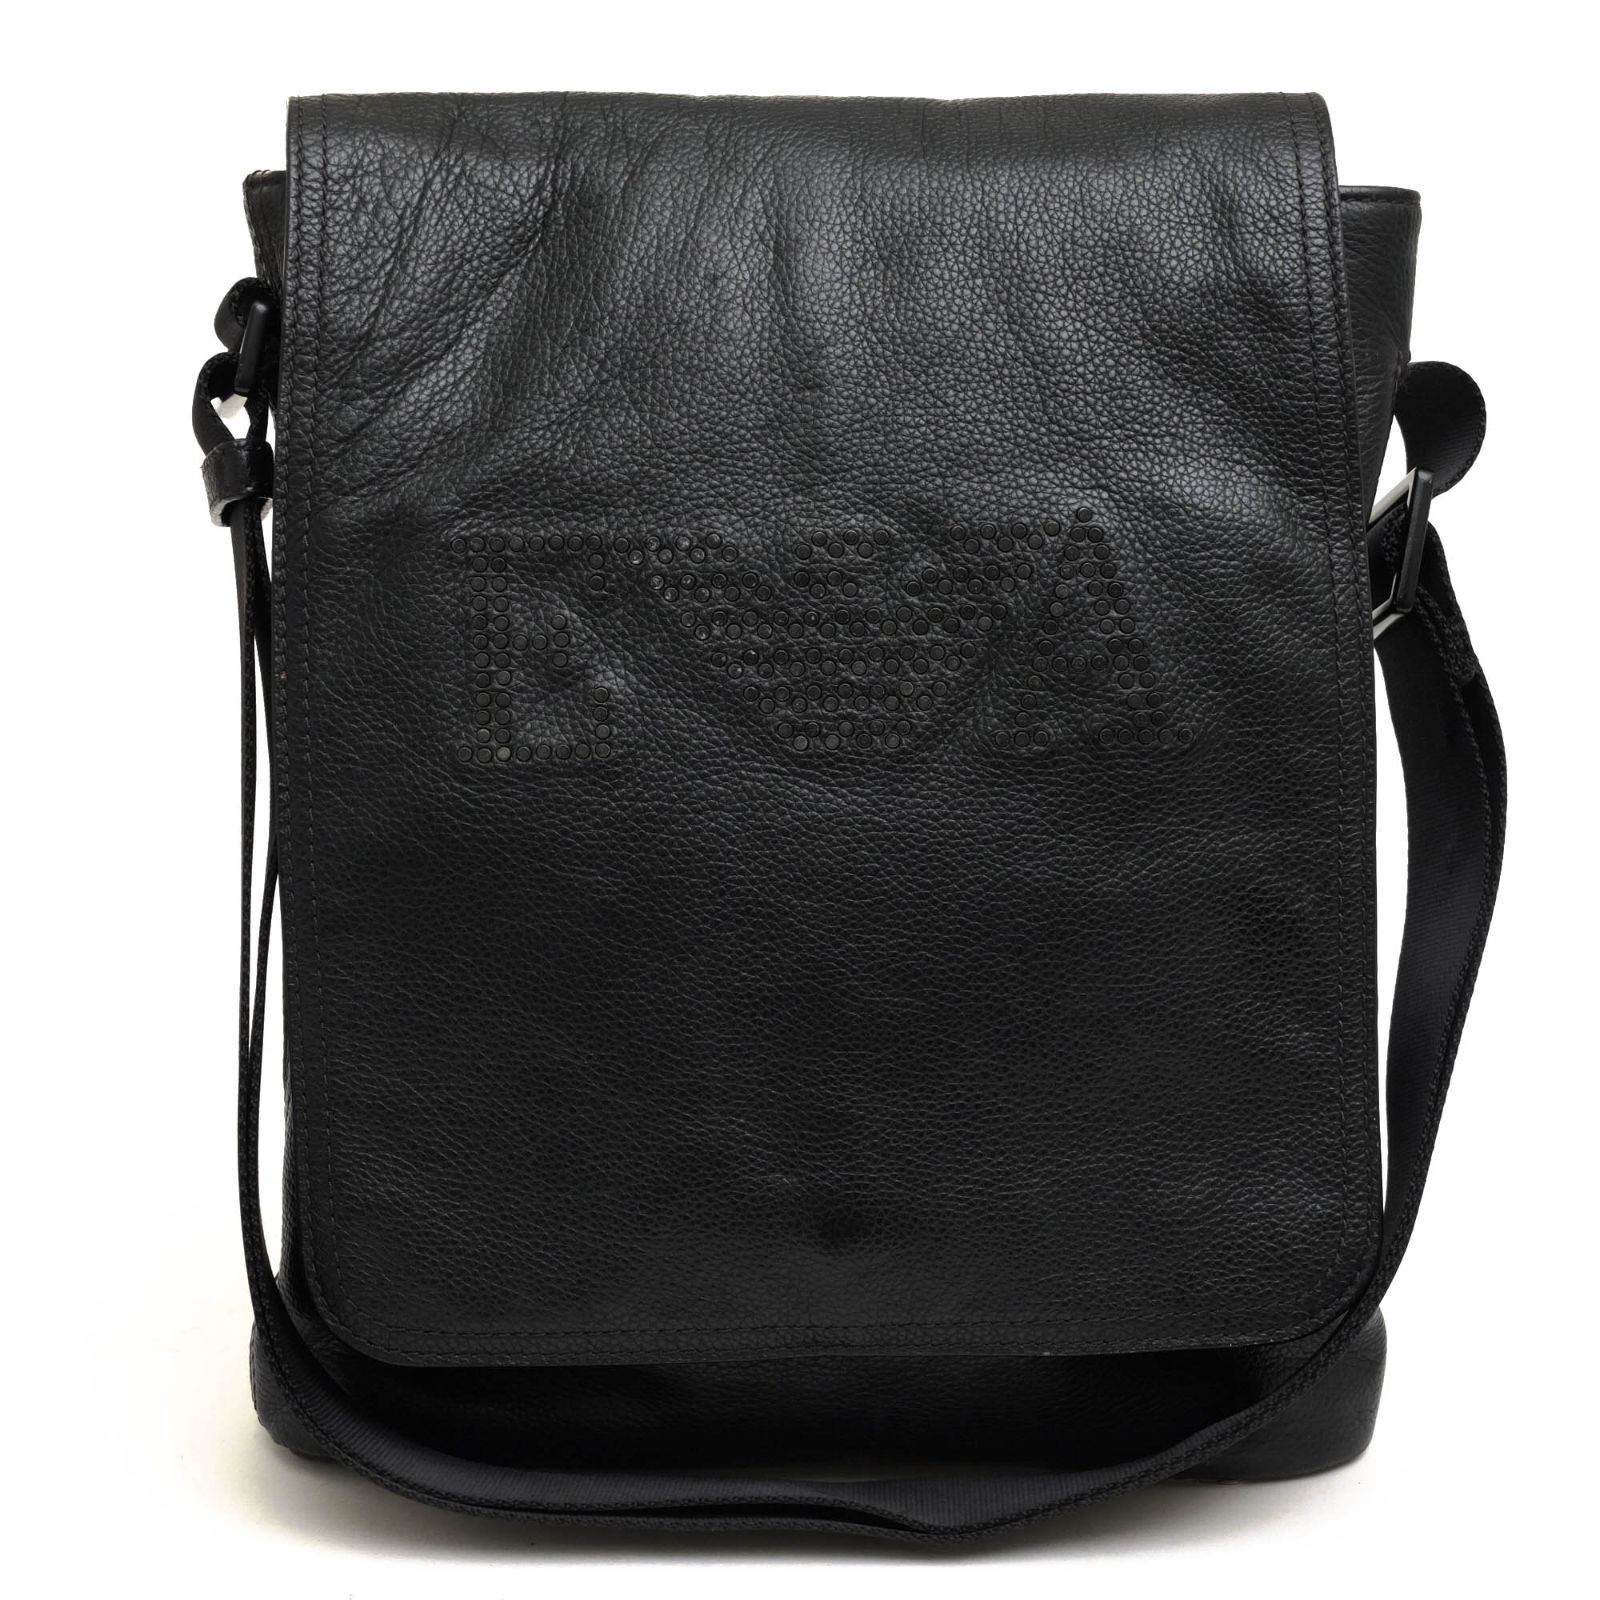 アルマーニ／EMPORIO ARMANI バッグ ショルダーバッグ 鞄 メンズ 男性 男性用レザー 革 本革 ブラック 黒 YEM247 YH150  EAイーグルロゴ シボ革 シュリンクレザー メッセンジャーバッグ スタッズ